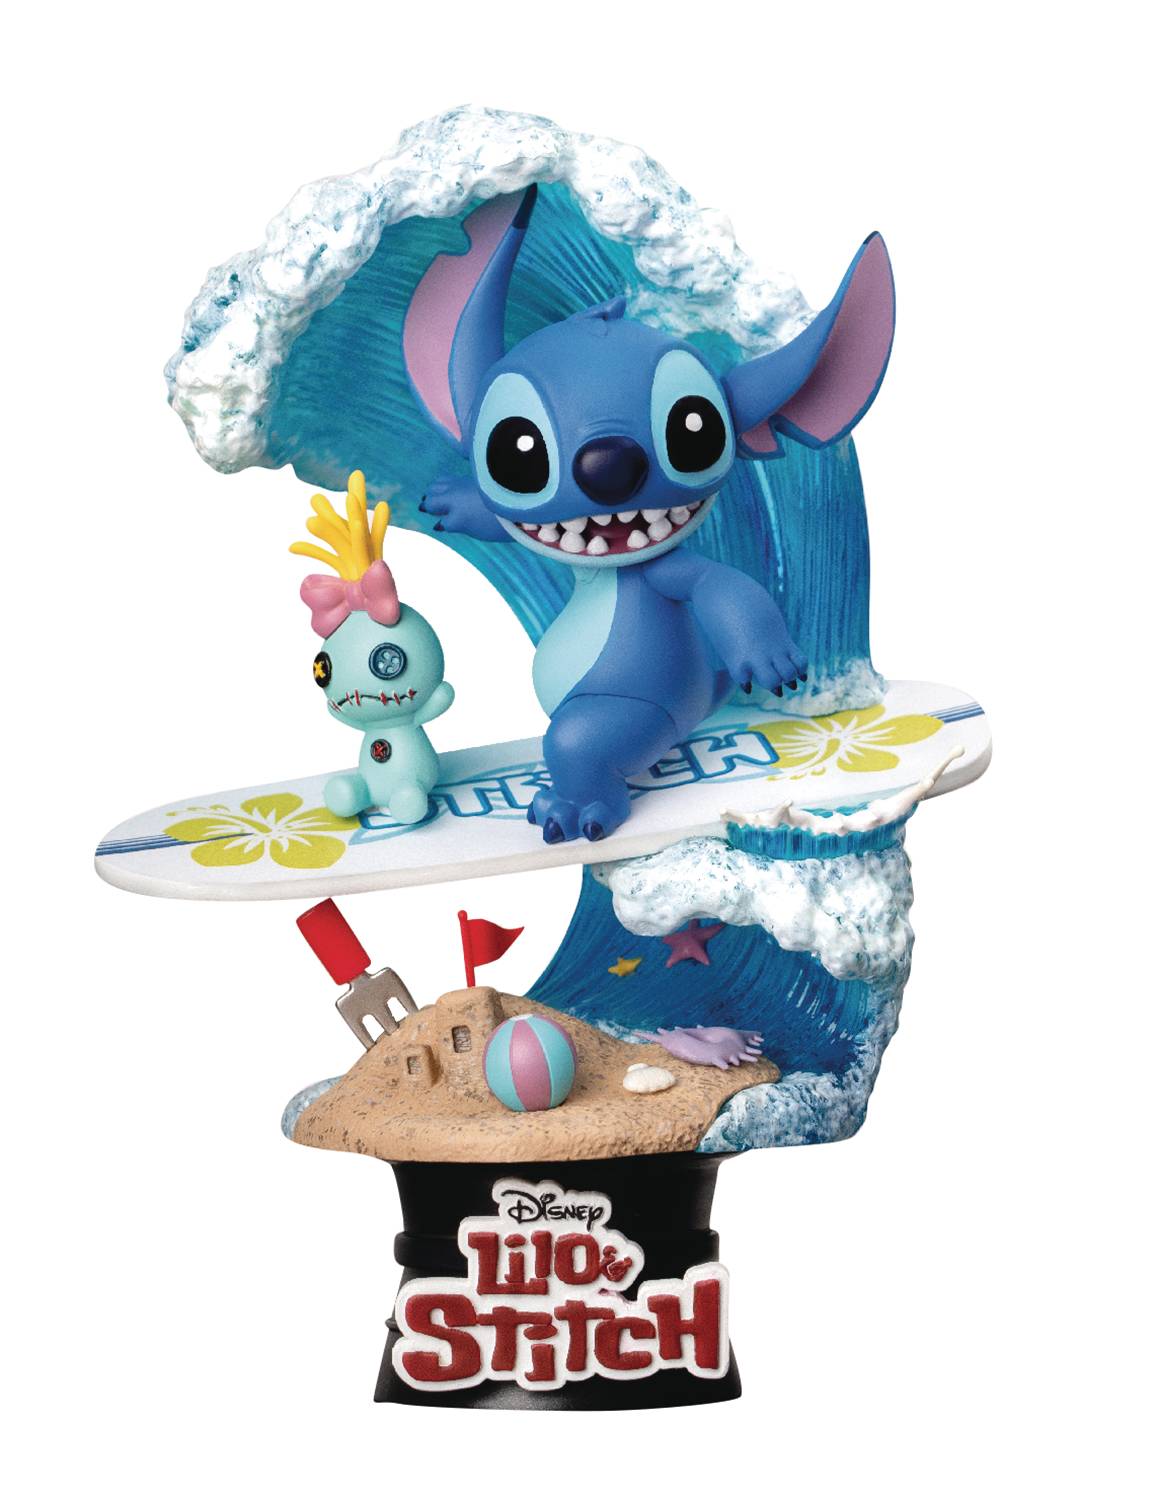 Disney Store Lilo & Stitch 20th Anniversary Figurine